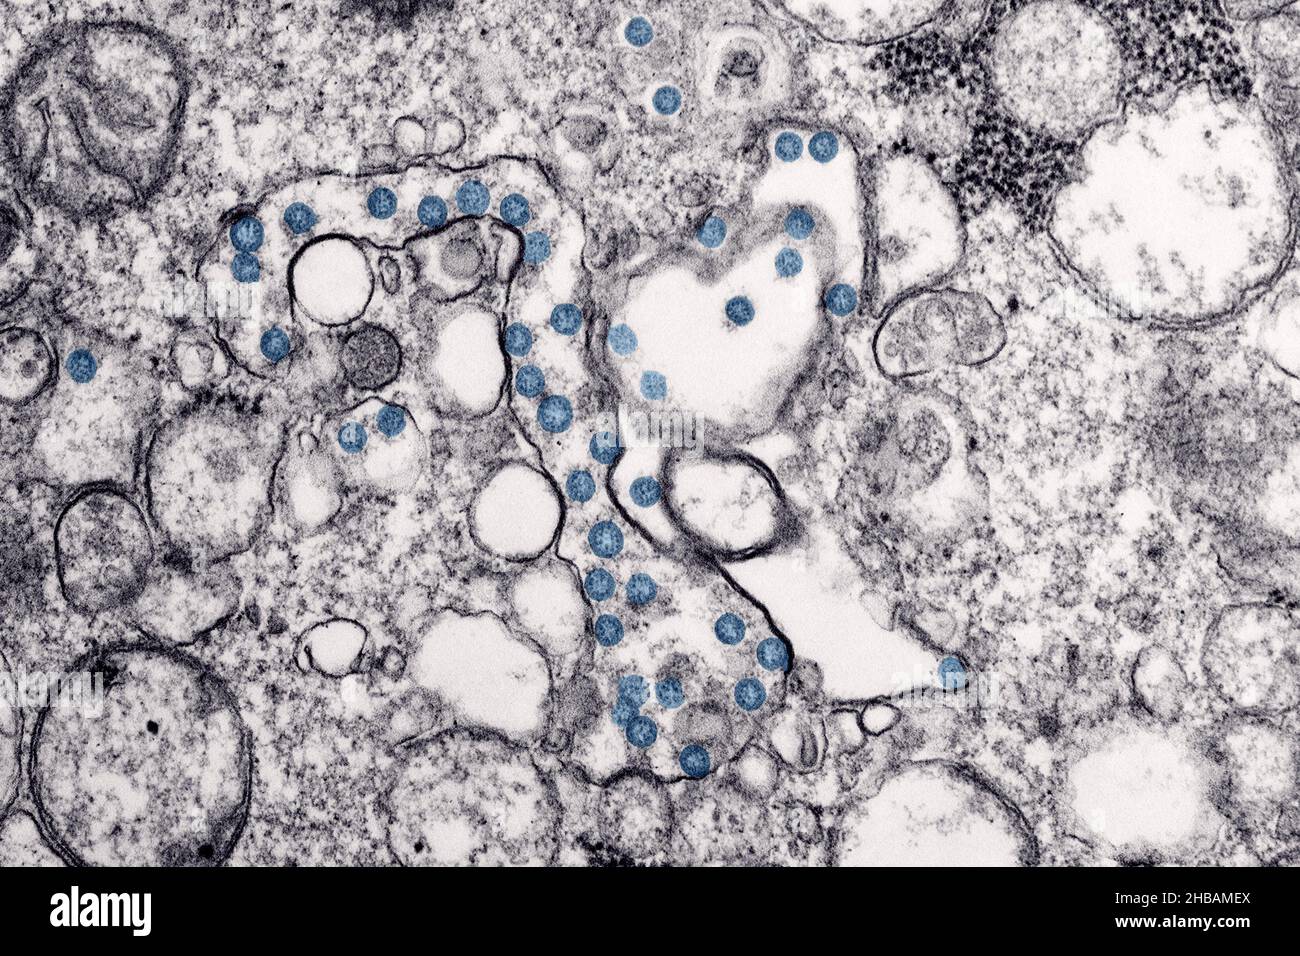 Transmissionselektronenmikroskopisches Bild eines Isolats aus dem ersten US-Fall von COVID-19, früher bekannt als 2019-nCoV. Die kugelförmigen viralen Partikel, blau gefärbt, enthalten Querschnitte durch das virale Genom, die als schwarze Punkte angesehen werden. Eine optimierte und verbesserte Version eines Bildes, das von den US Centers for Disease Control and Prevention produziert wurde / Credit: CDC / C.S. Goldschmied und A. Tamin Stockfoto